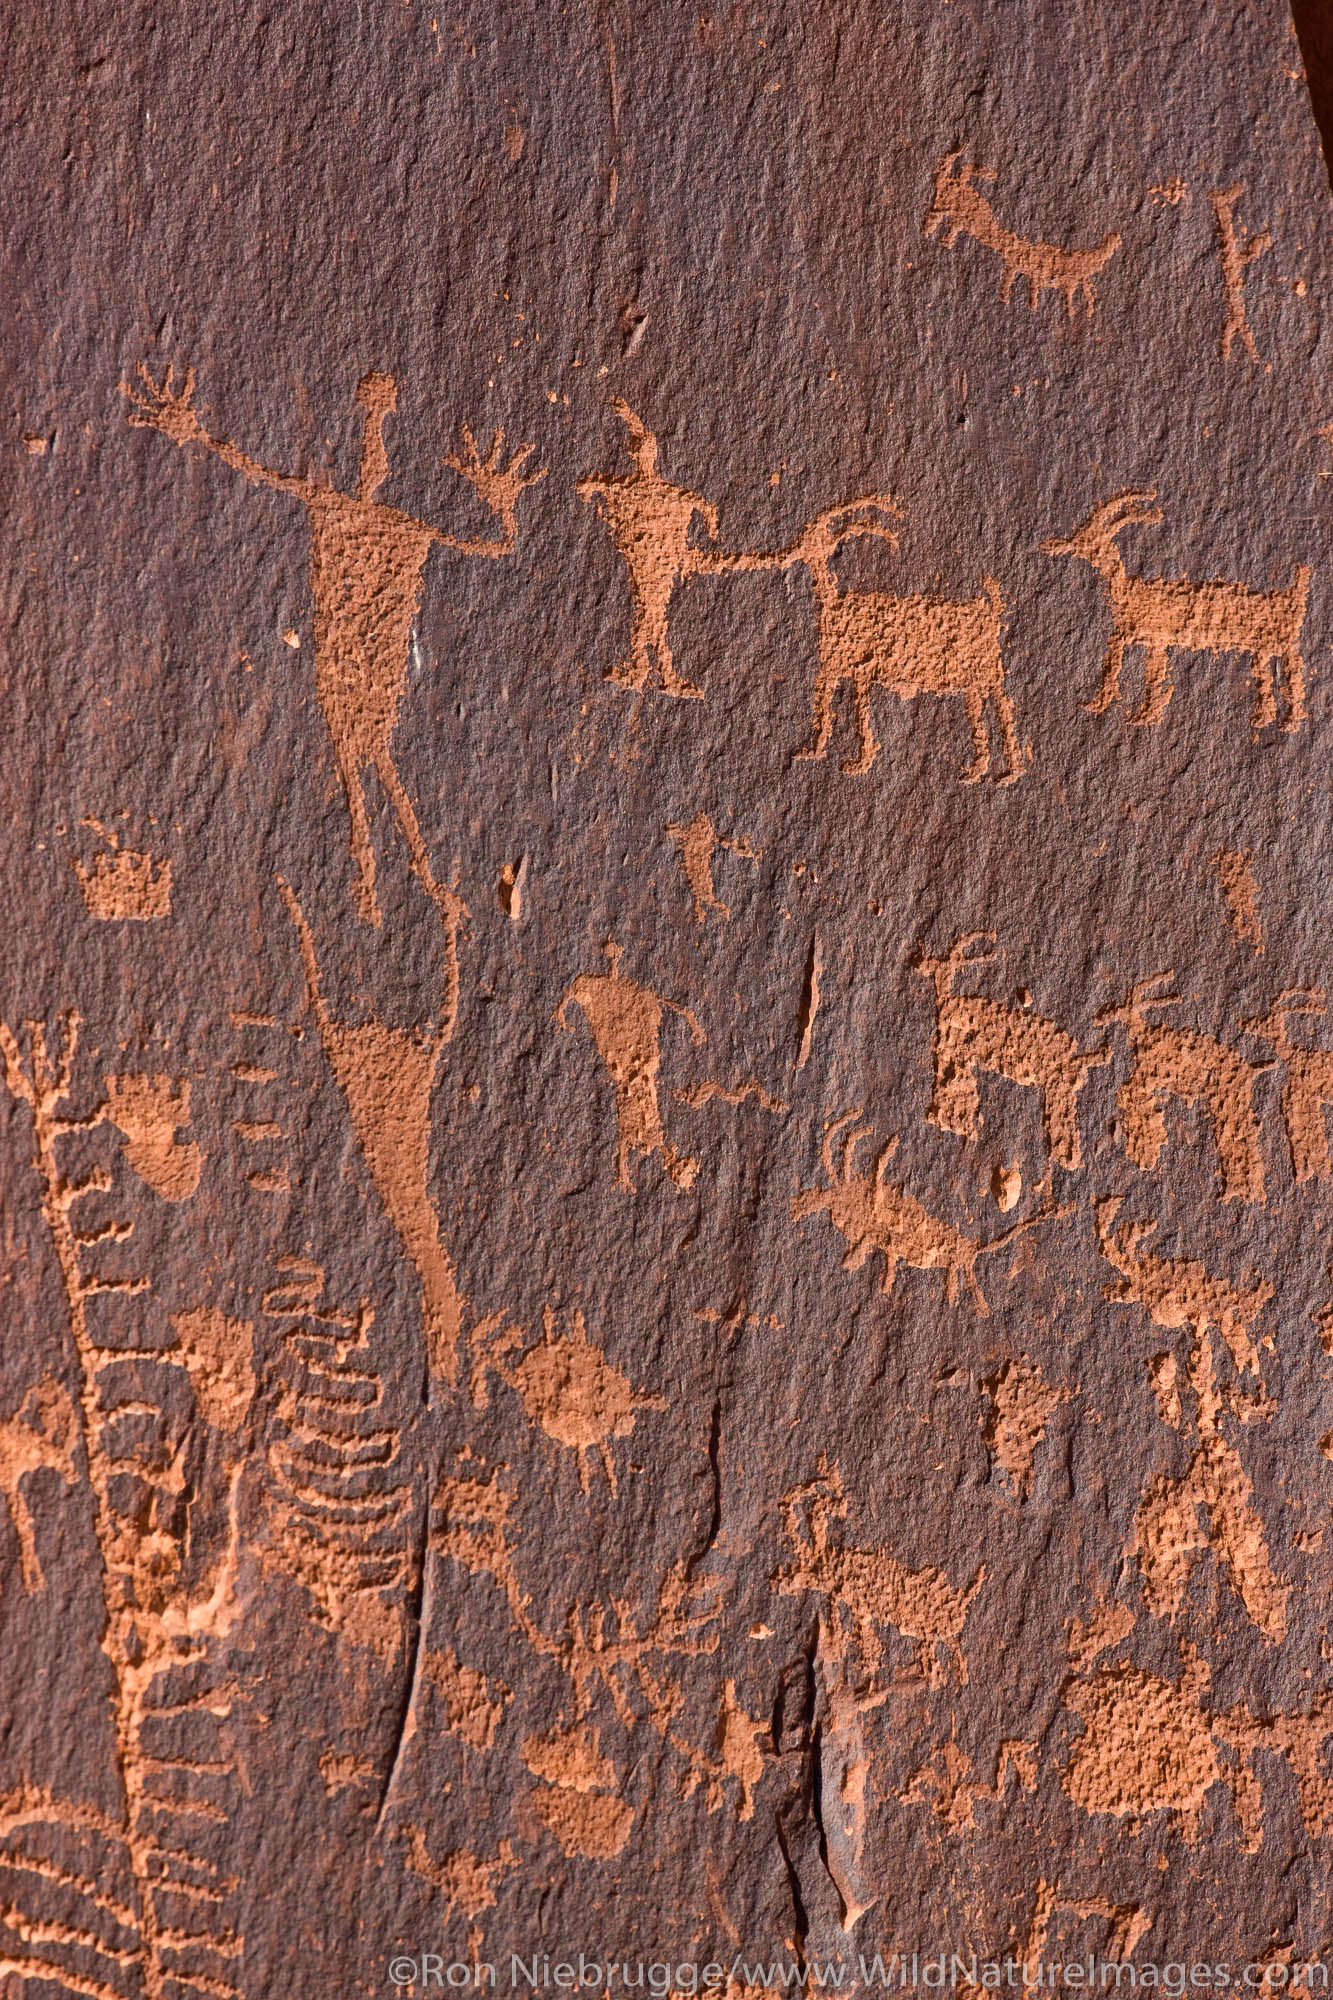 Native American rock art near Moab, Utah.